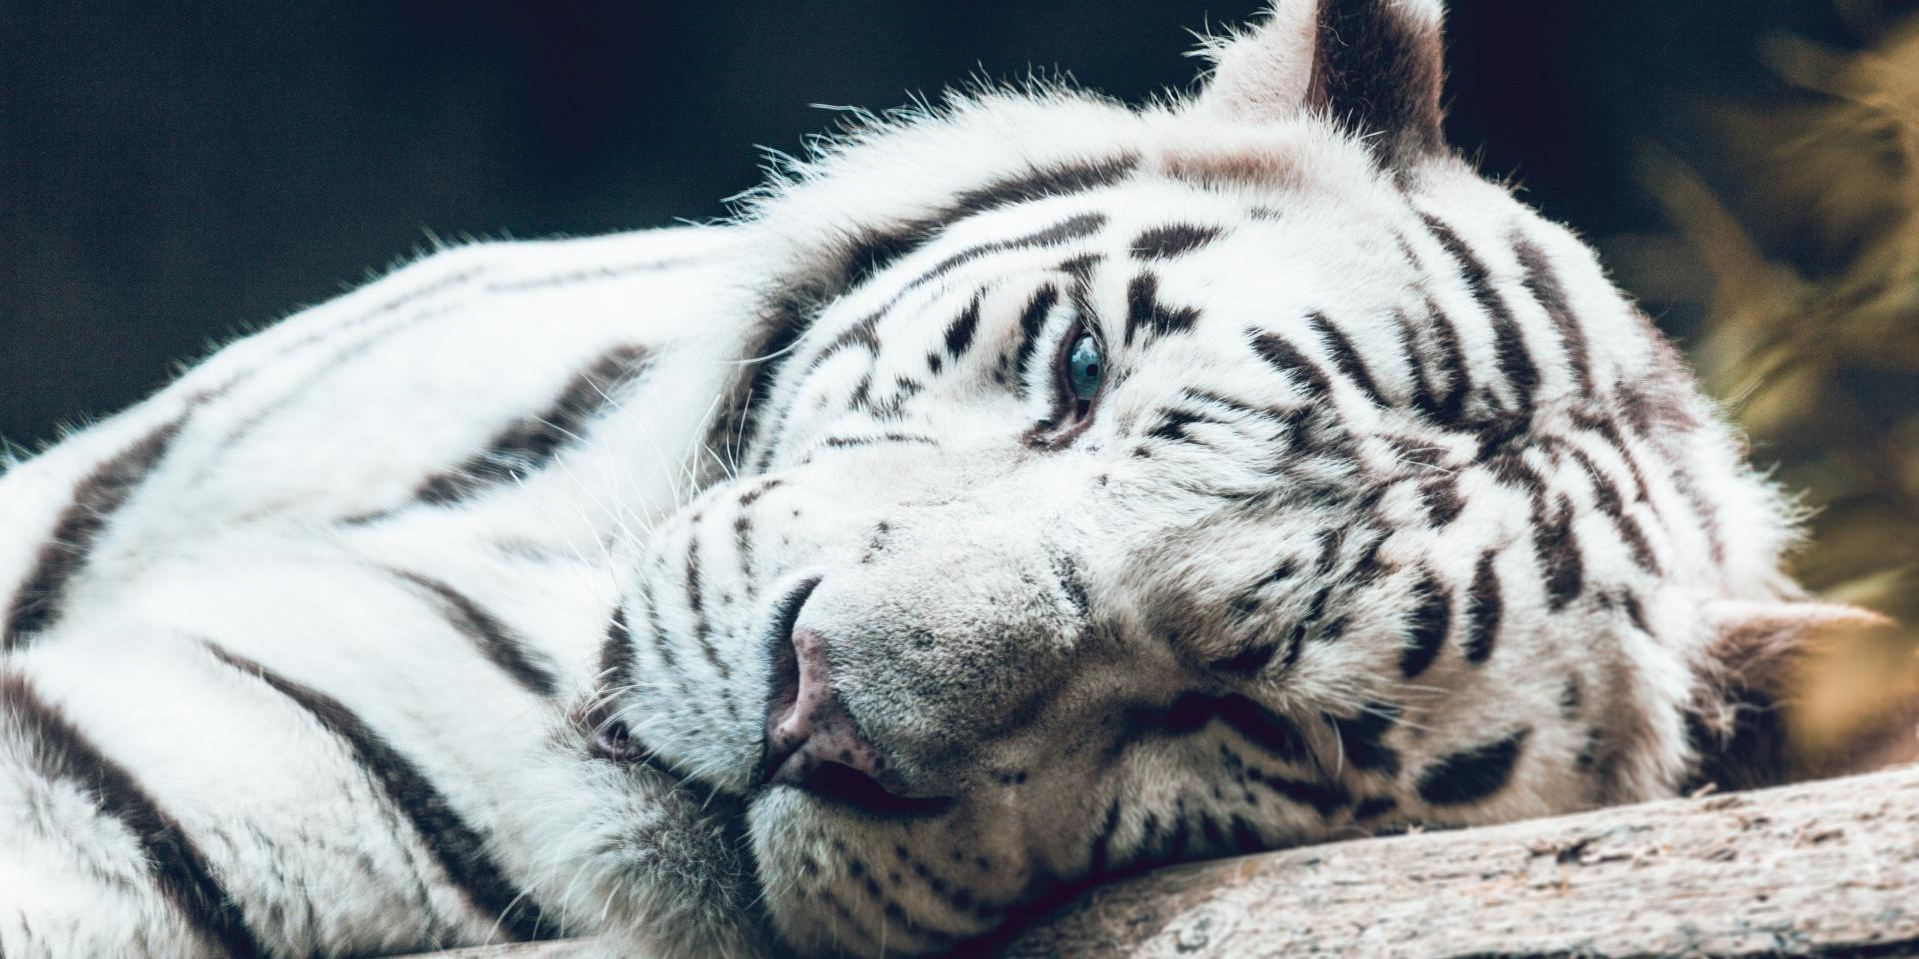 Matan a tigre blanco que merodeaba en calles; Profepa investiga su procedencia | El Imparcial de Oaxaca